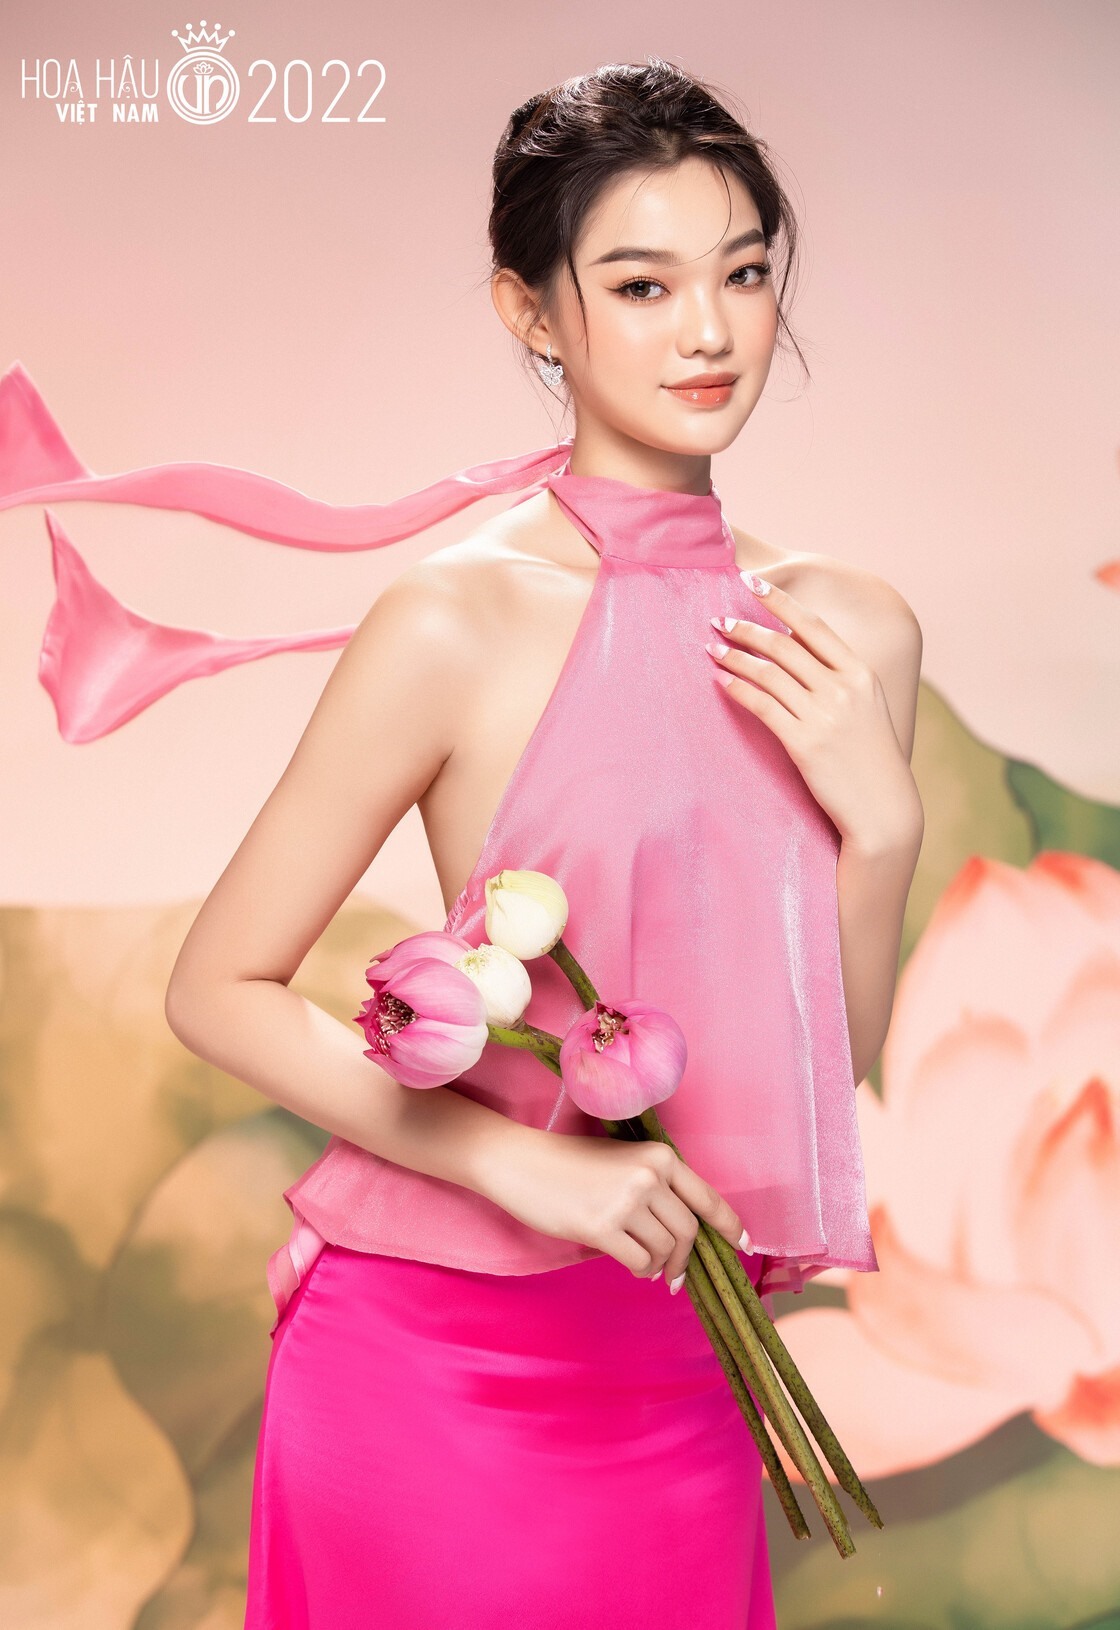 Những người đẹp có hình thể nóng bỏng nhất Hoa hậu Việt Nam 2022 - Ảnh 3.